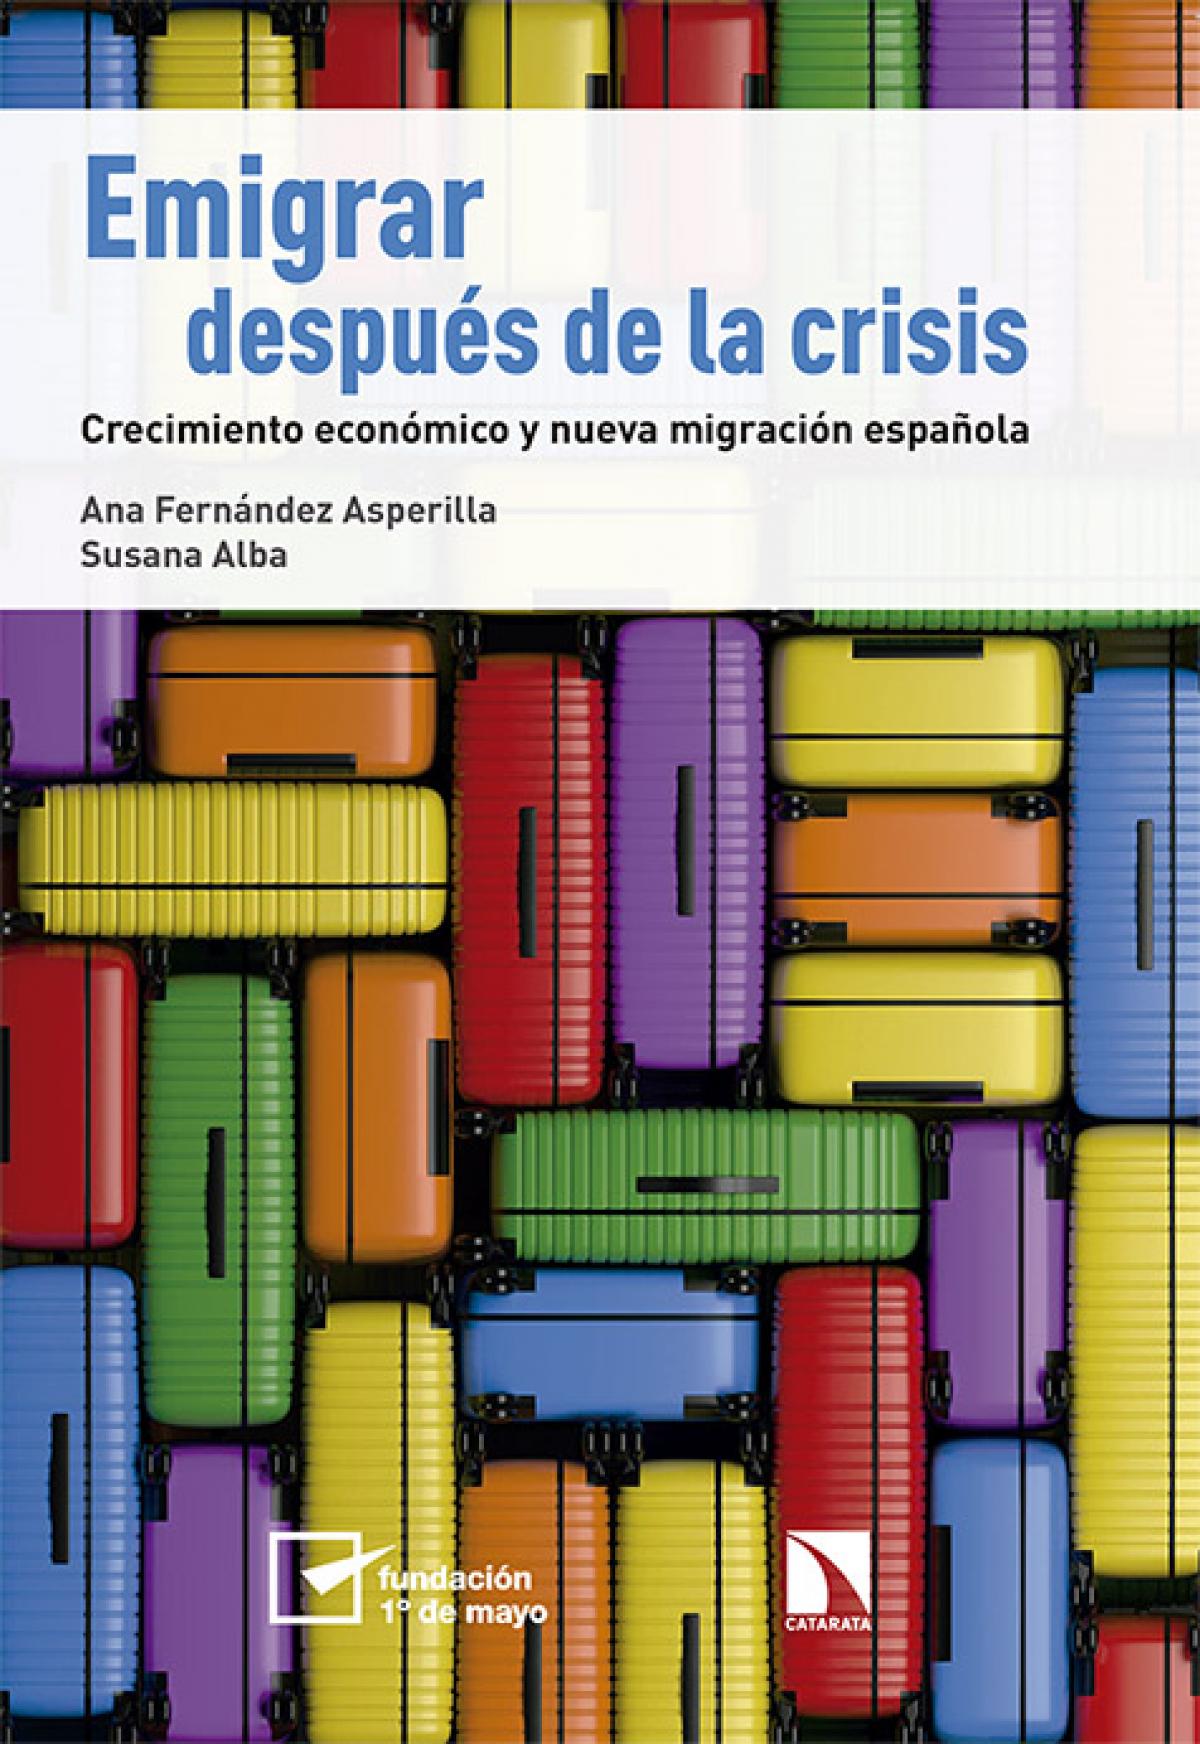 Portada libro "Emigrar después de la crisis"